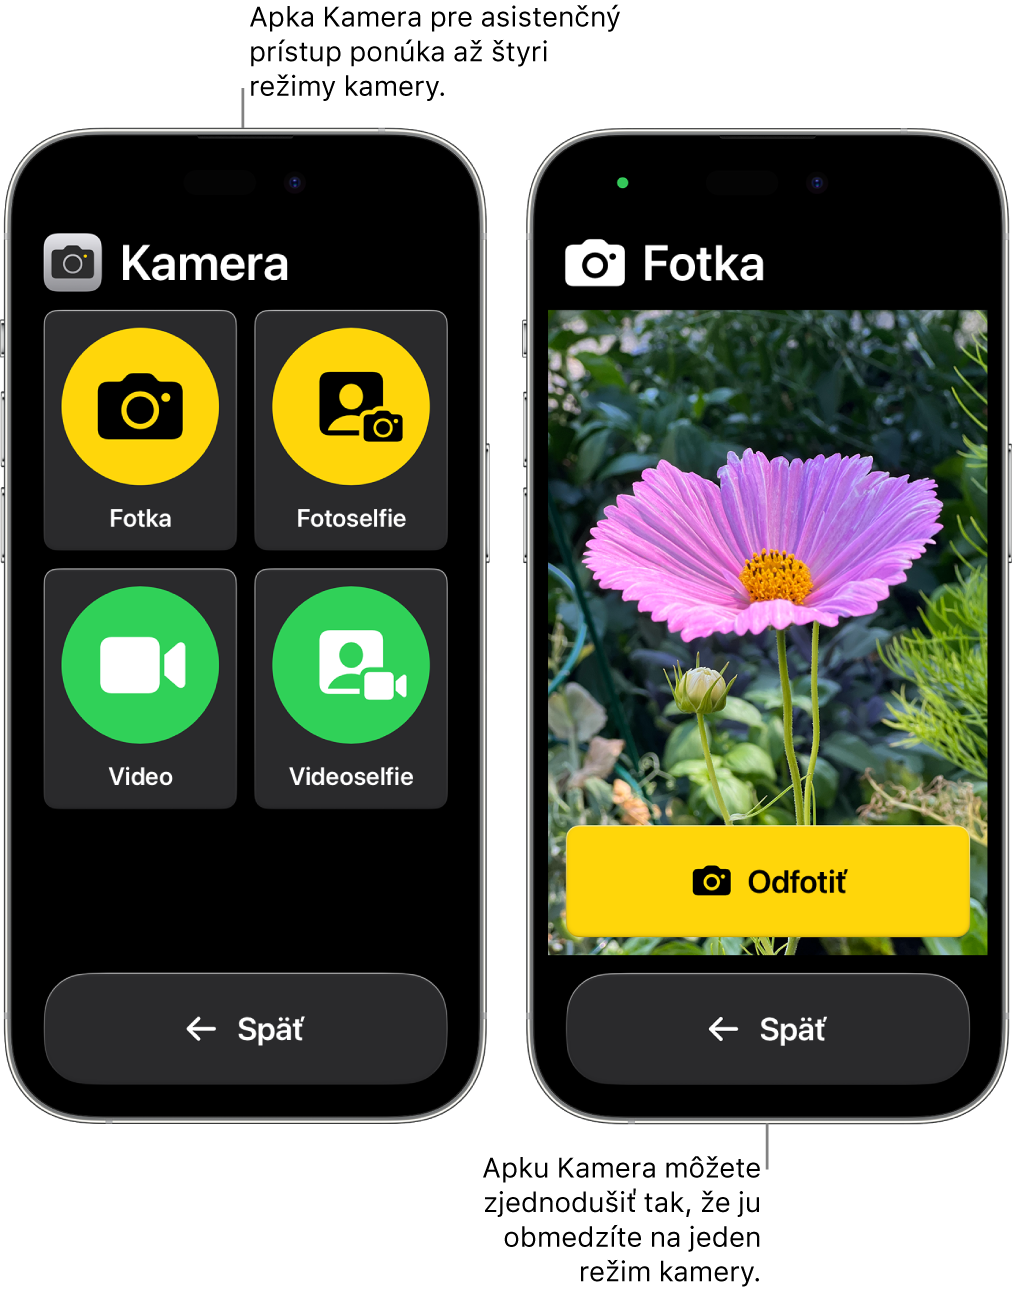 Dva iPhony v režime asistenčného prístupu. Na jednom iPhone sa zobrazuje apka Kamera s režimami, ktoré si môže užívateľ vybrať, ako Video alebo Fotoselfie. Na druhom iPhone sa zobrazuje apka Kamera s jediným režimom na fotografovanie.